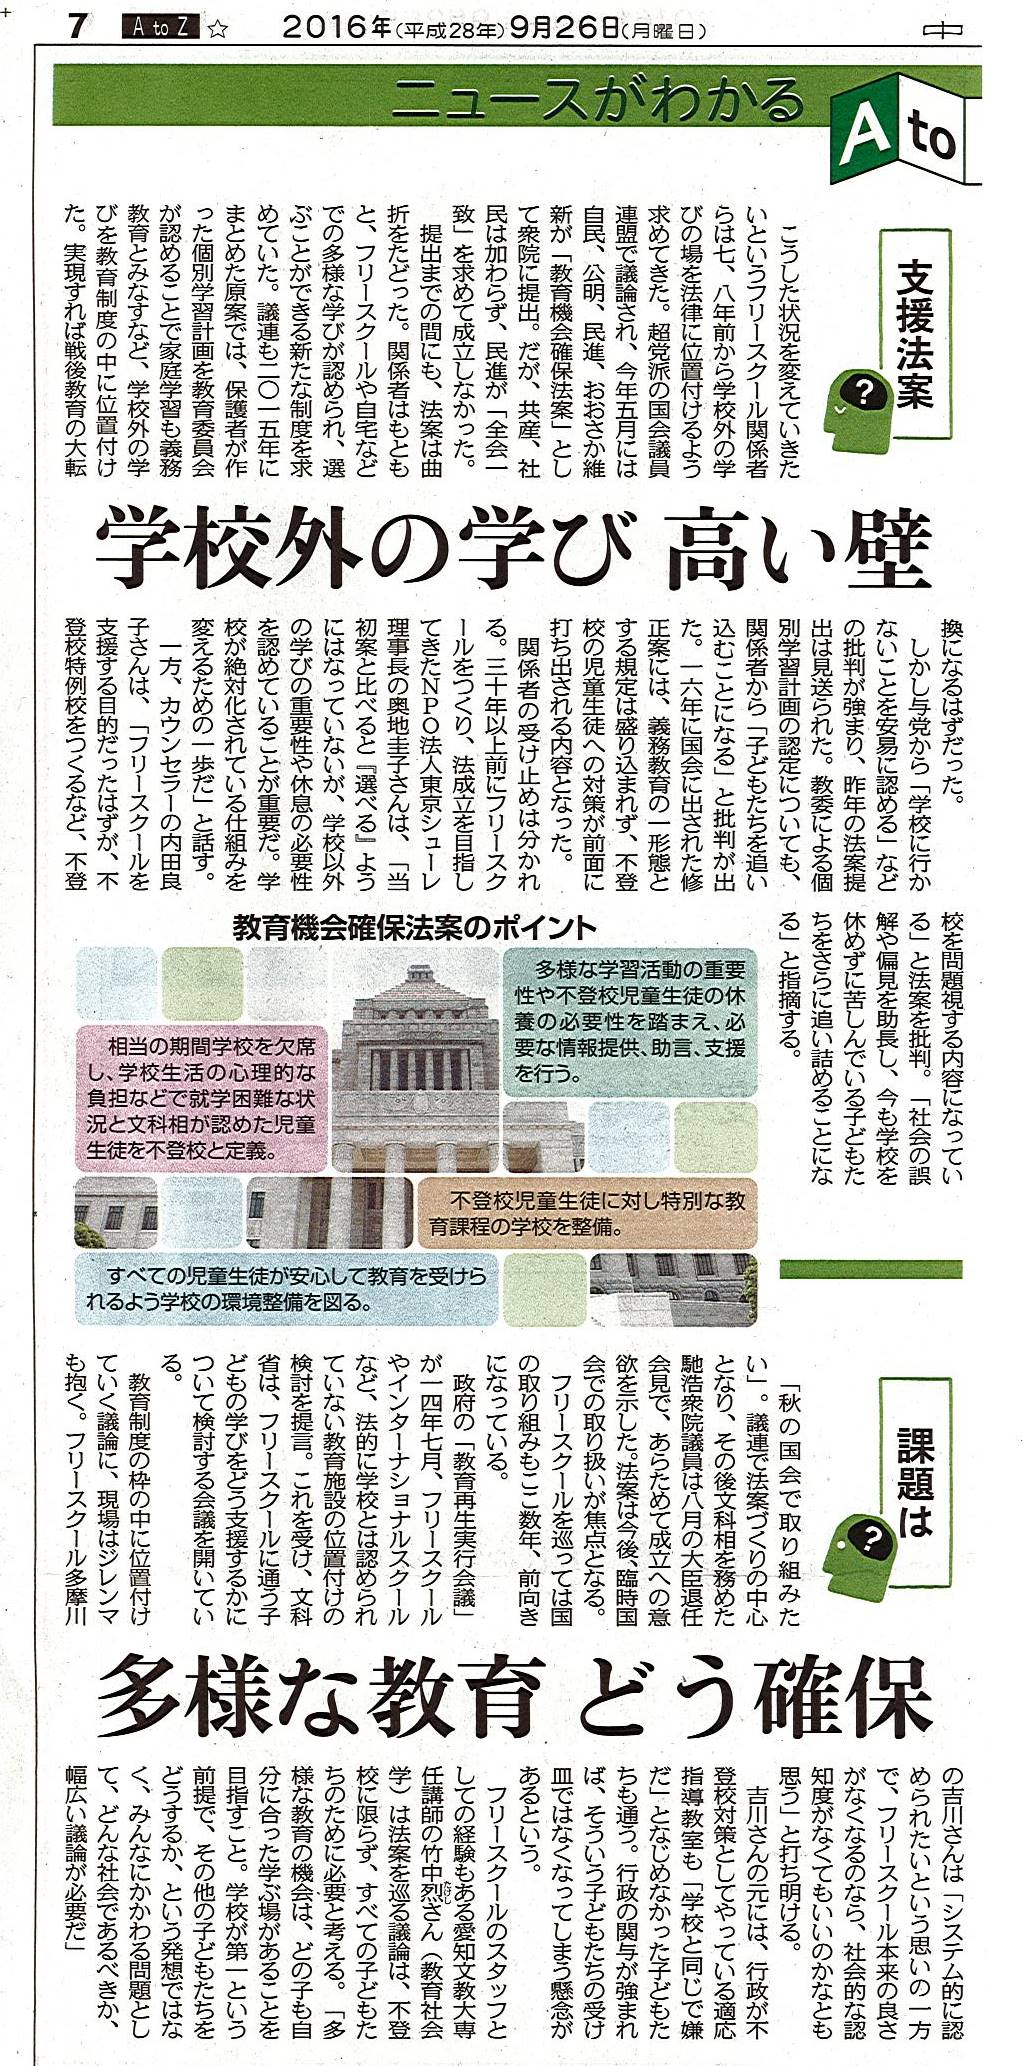 2016-09中日新聞記事左半分